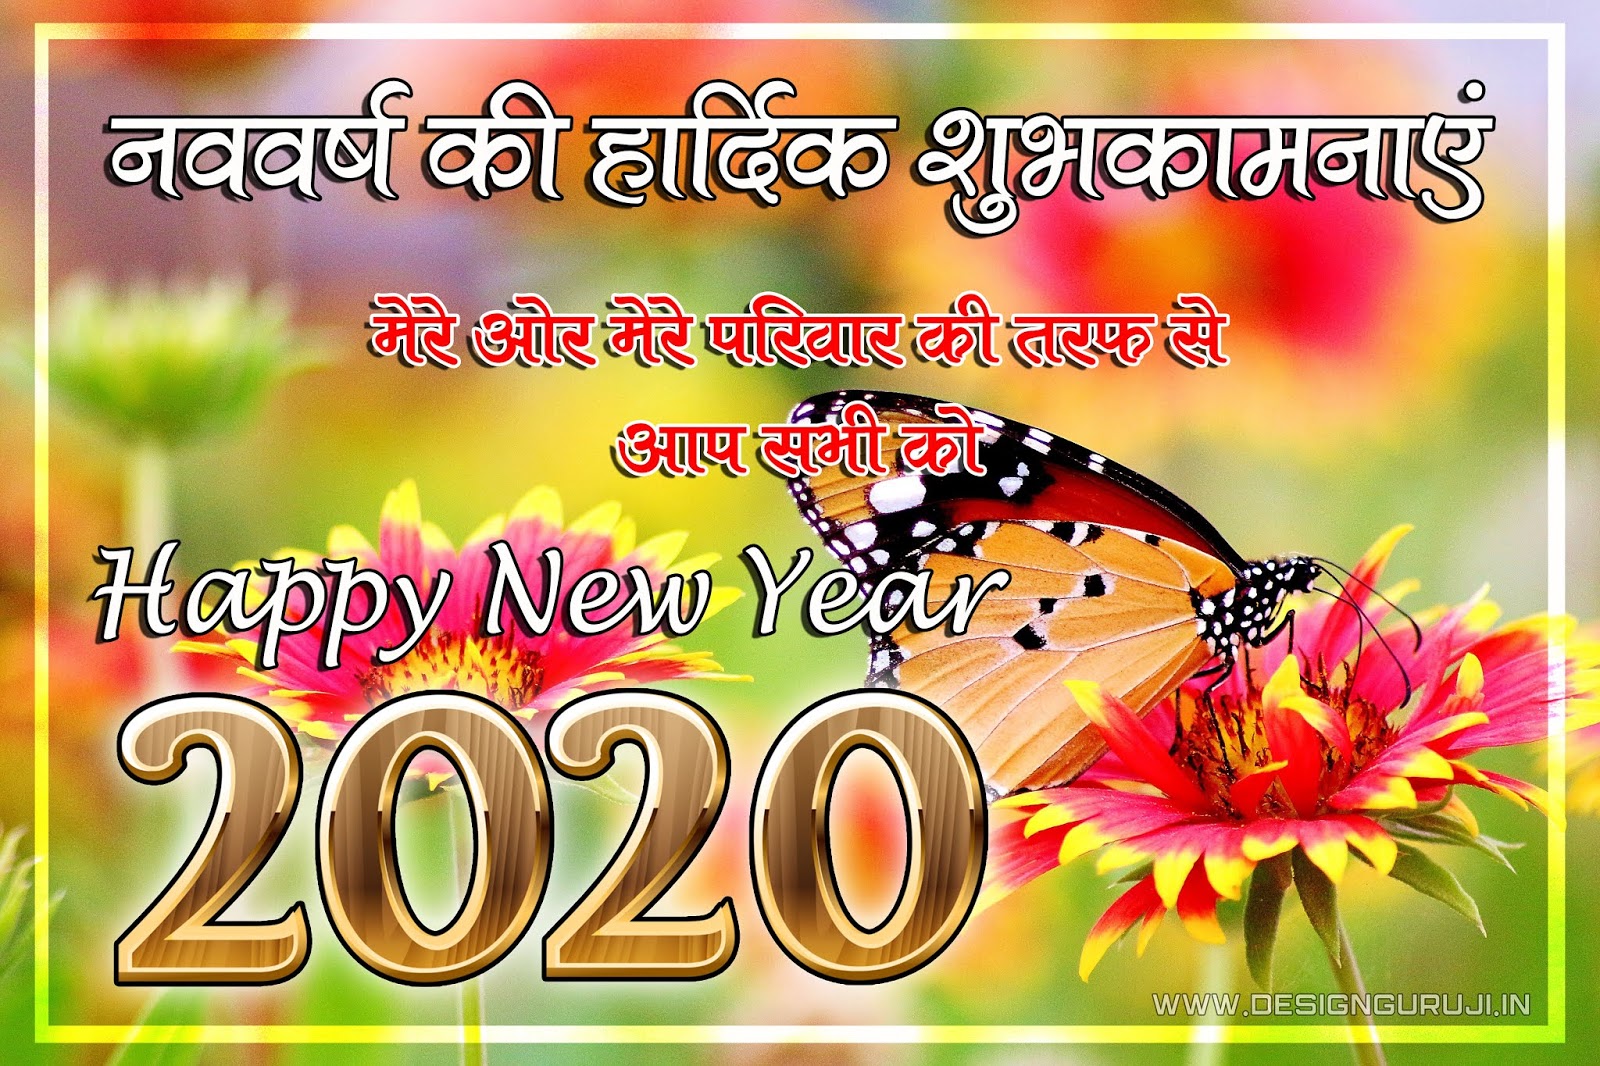 50+ New Year Wallpaper & Shayari in Hindi - Design Guruji